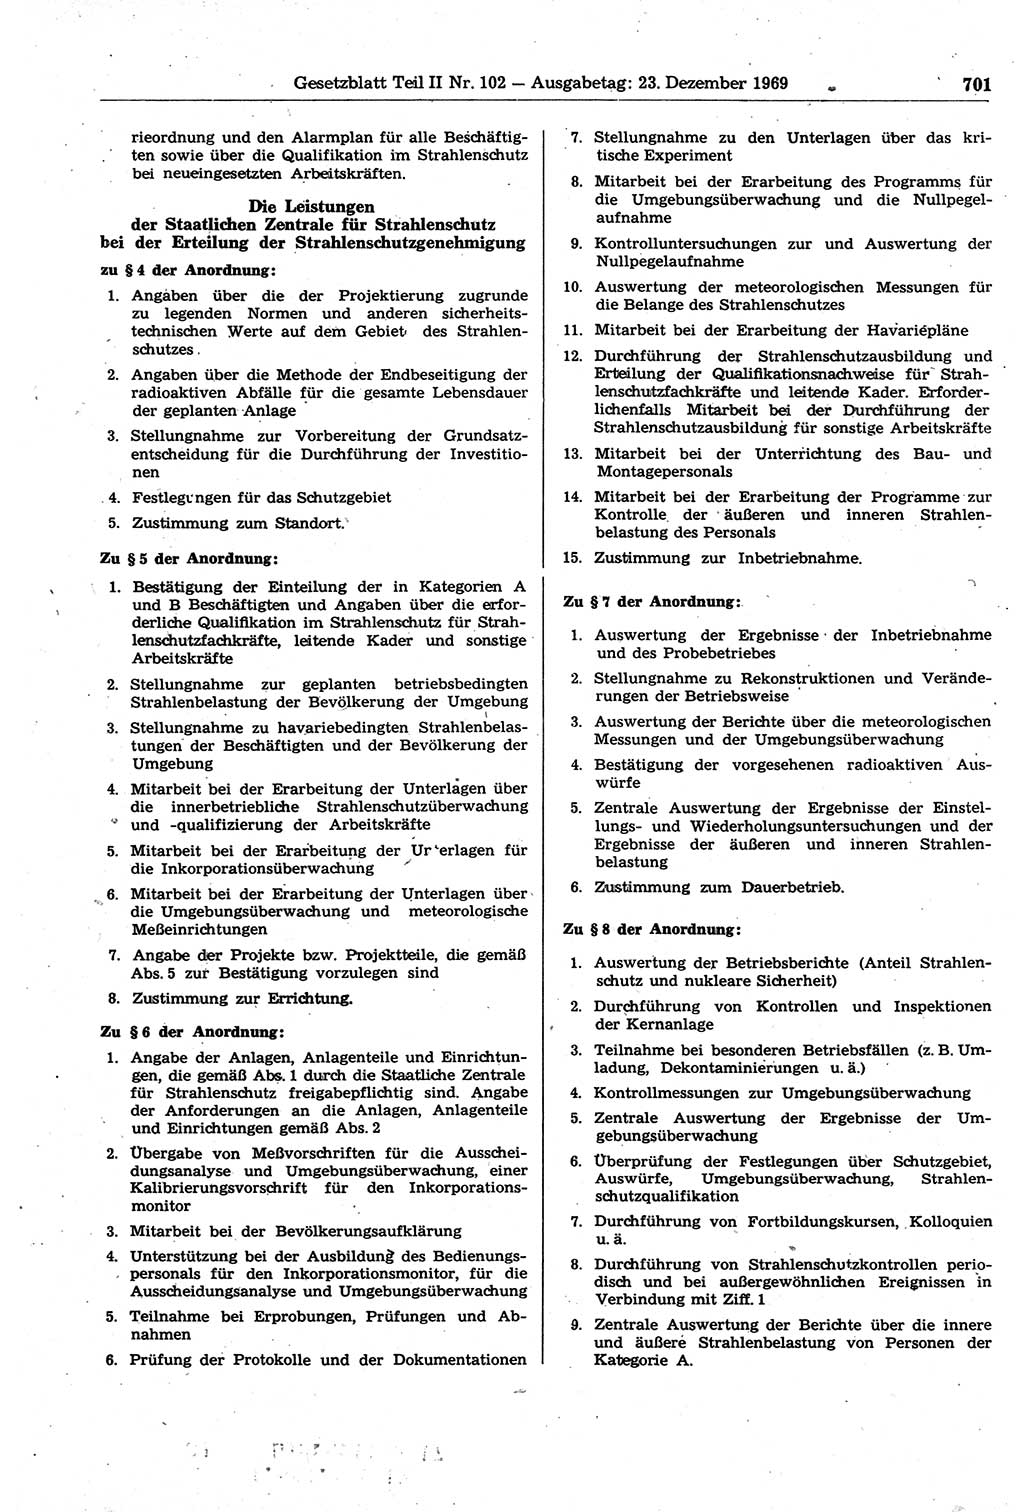 Gesetzblatt (GBl.) der Deutschen Demokratischen Republik (DDR) Teil ⅠⅠ 1969, Seite 701 (GBl. DDR ⅠⅠ 1969, S. 701)